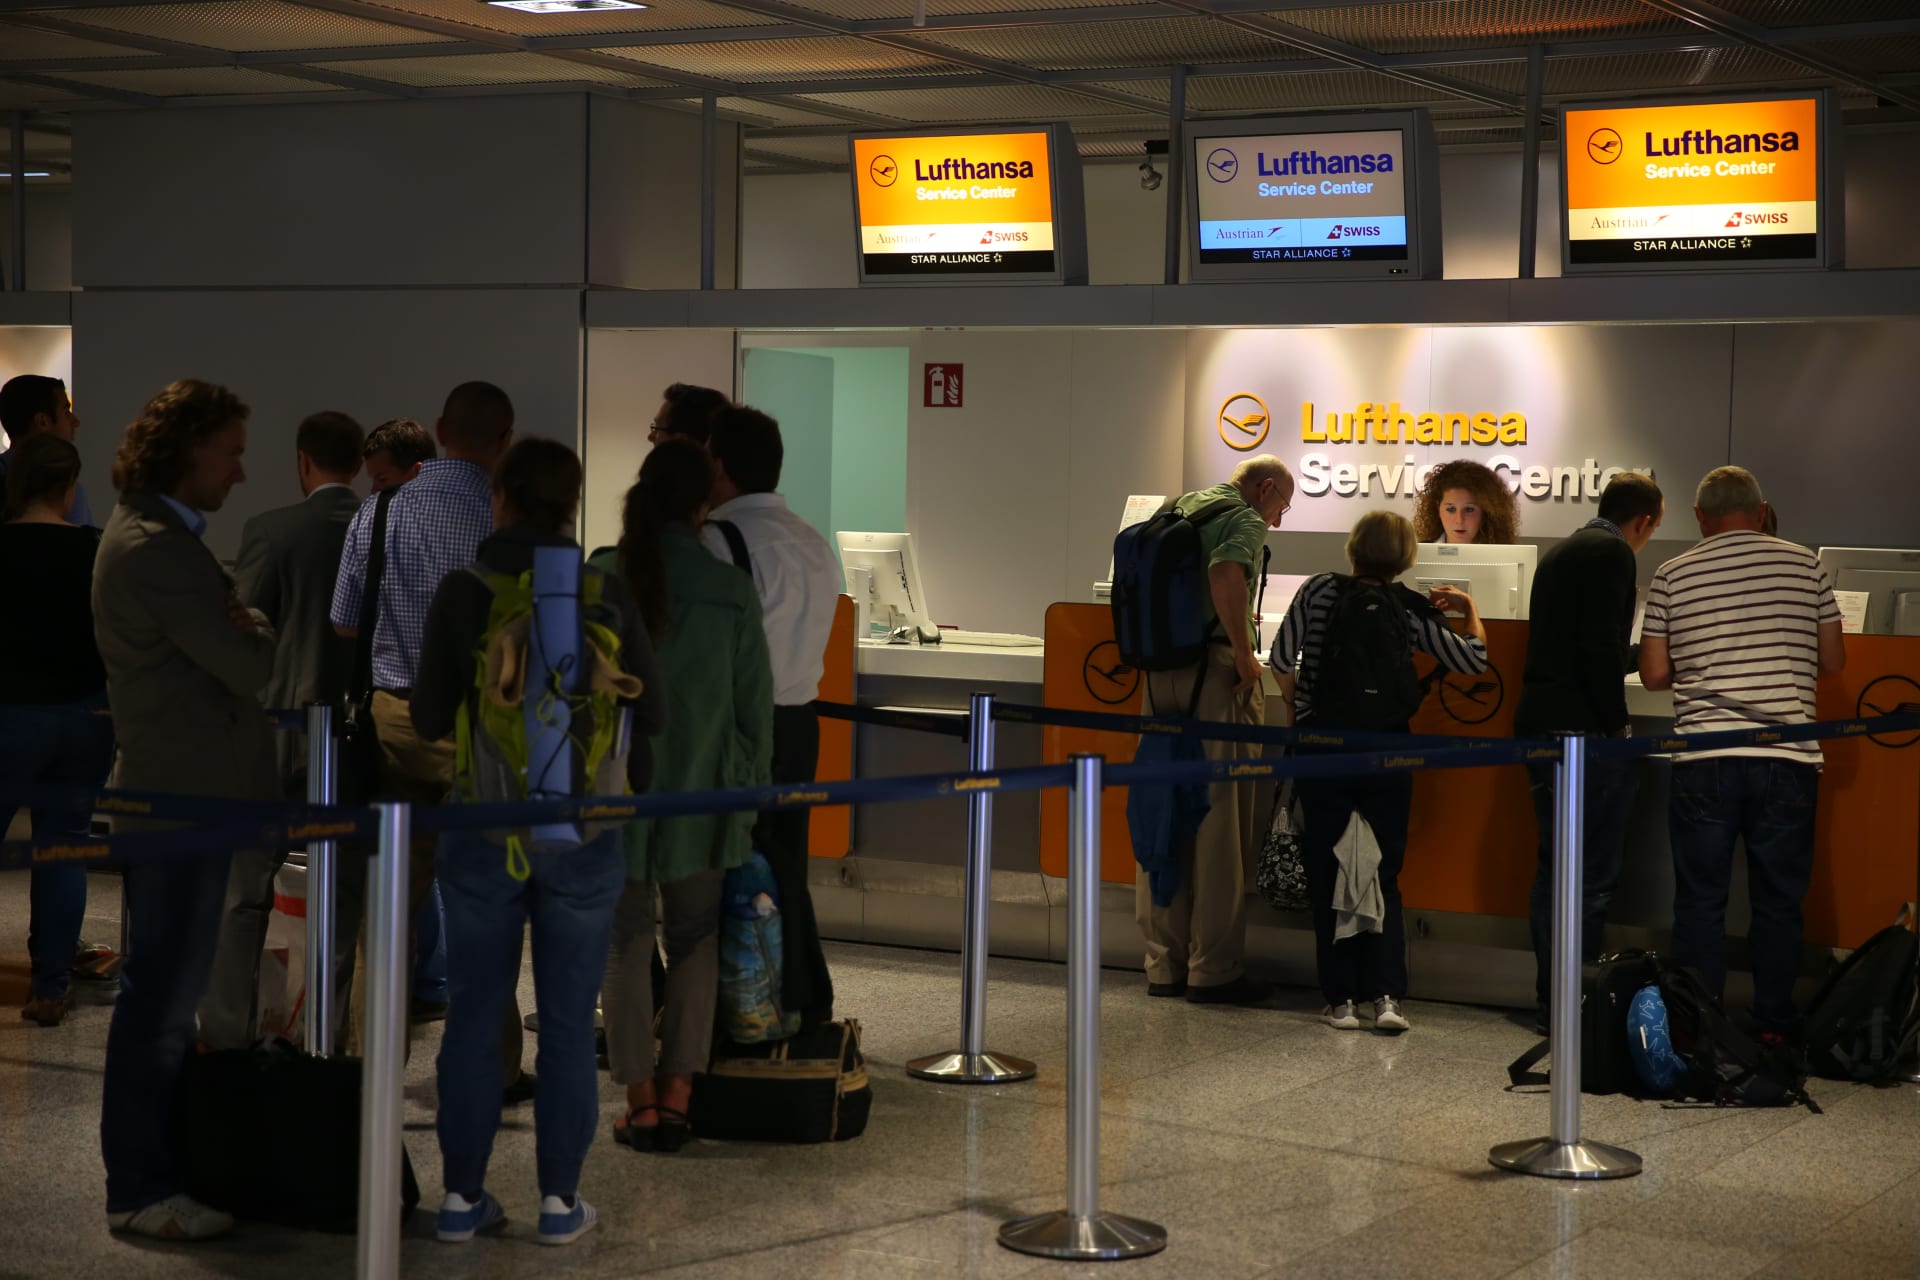 134 ألف مسافر سيتضررون جرّاء إلغاء رحلات لشركة لوفتهانزا